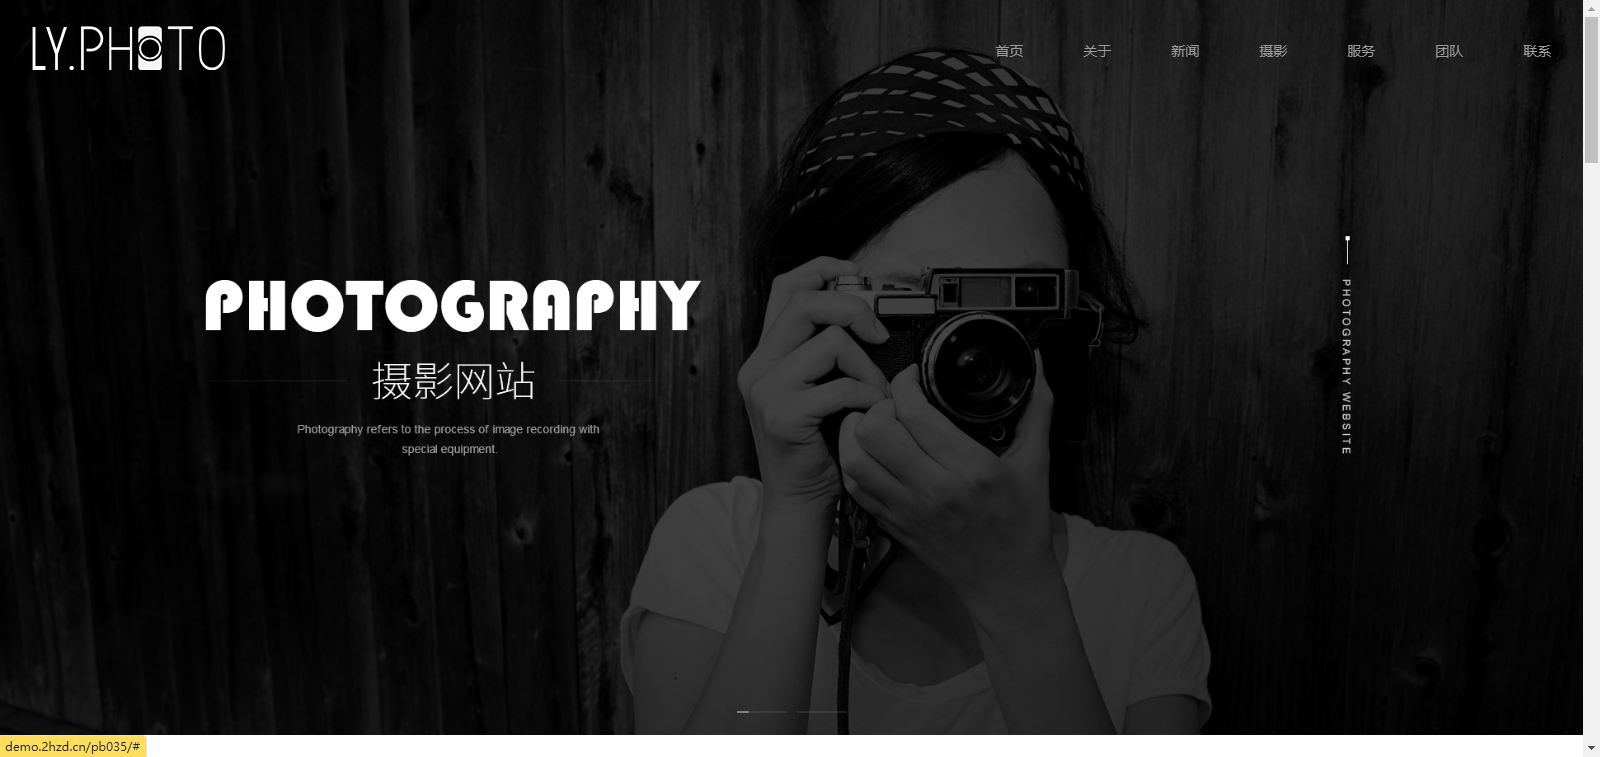 织梦CMS工作室摄影写真类网站模板(自适应手机端)-微分享自媒体驿站